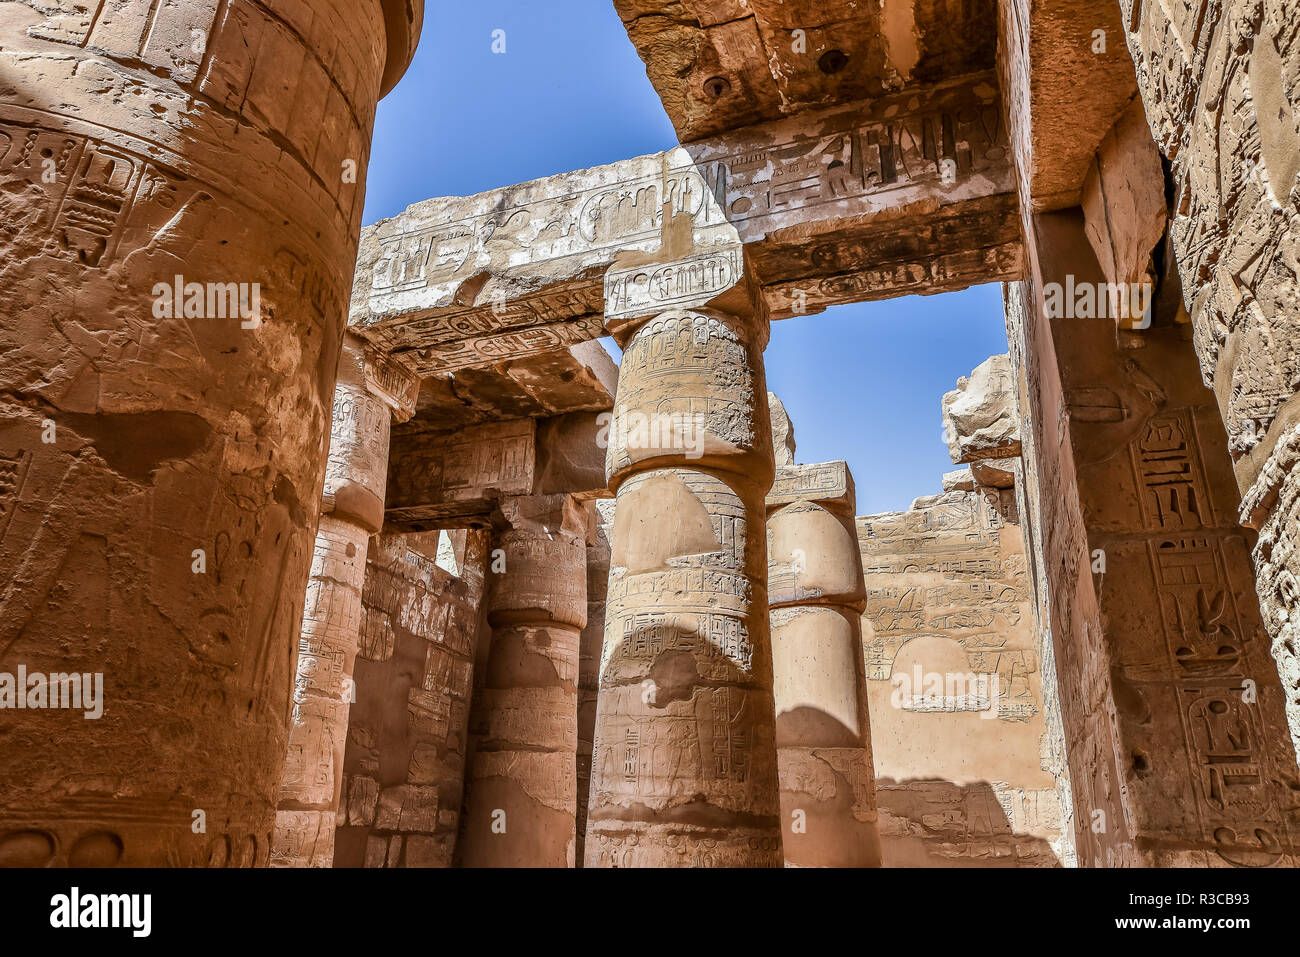 Columnas y cielo azul en la gran sala hipóstila salen en el templo de Amon-Re en Karnak, Egipto, 22 de octubre de 2018 Foto de stock